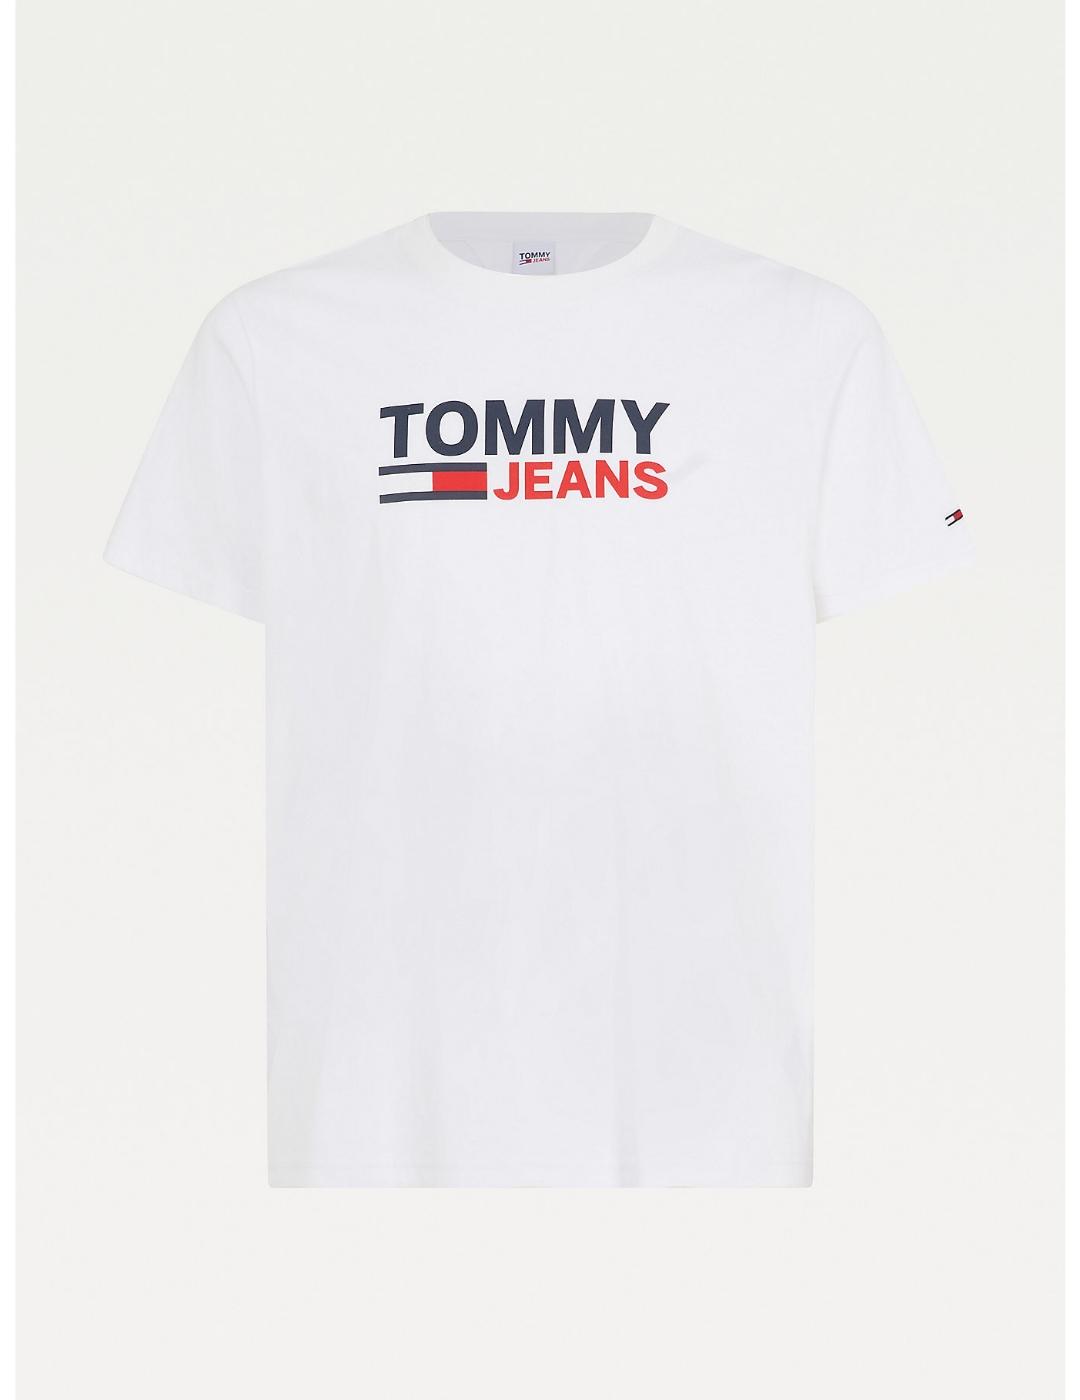 notificación sombrero Proceso de fabricación de carreteras Camiseta Tommy Jeans corp blanca para hombre